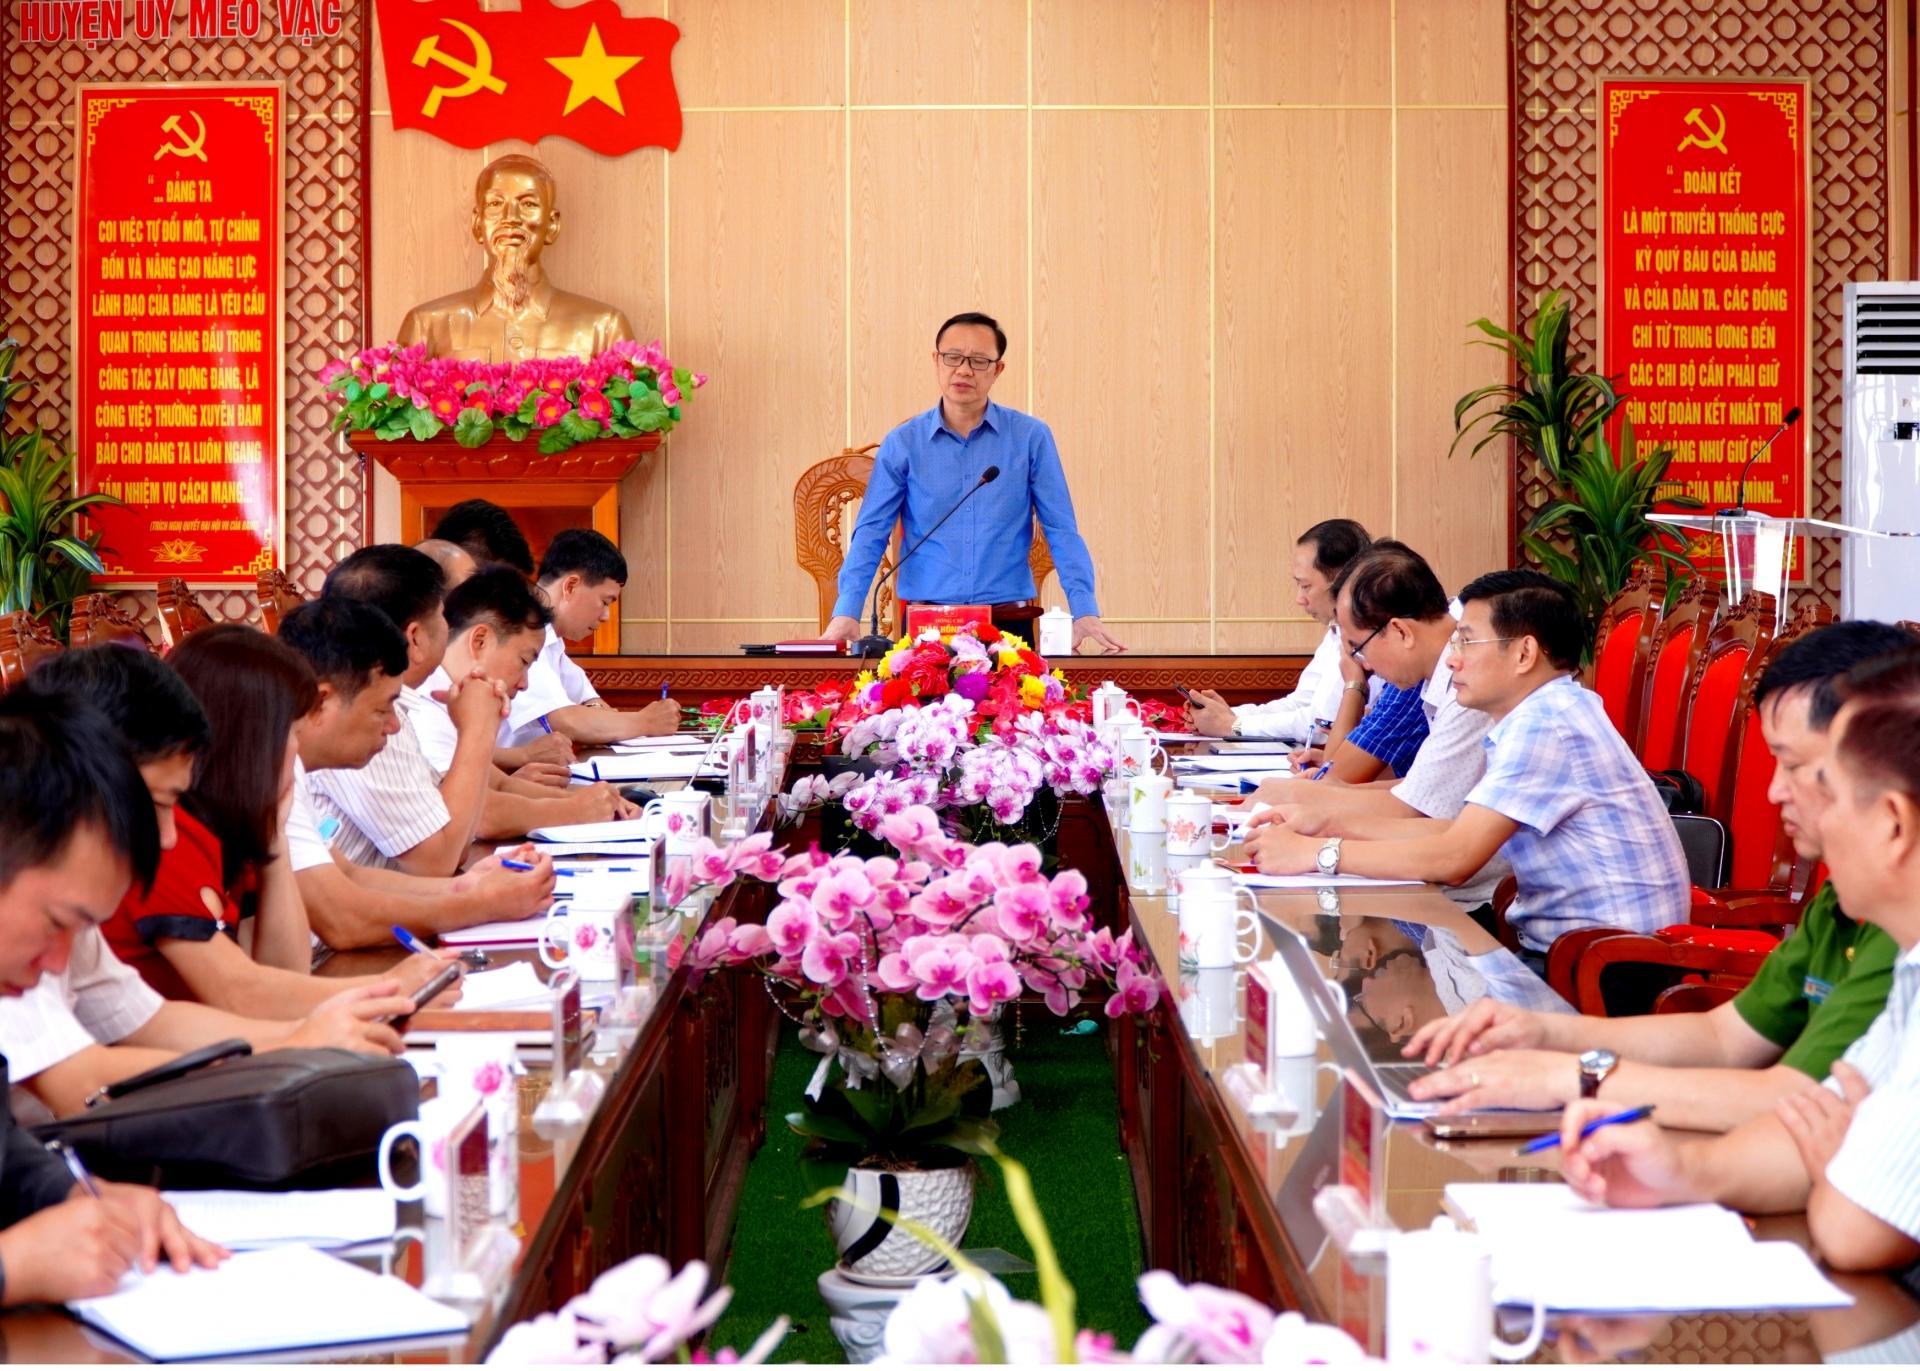 Phó Bí thư Thường trực Tỉnh ủy, Chủ tịch HĐND tỉnh Thào Hồng Sơn phát biểu tại buổi làm việc với lãnh đạo huyện Mèo Vạc.